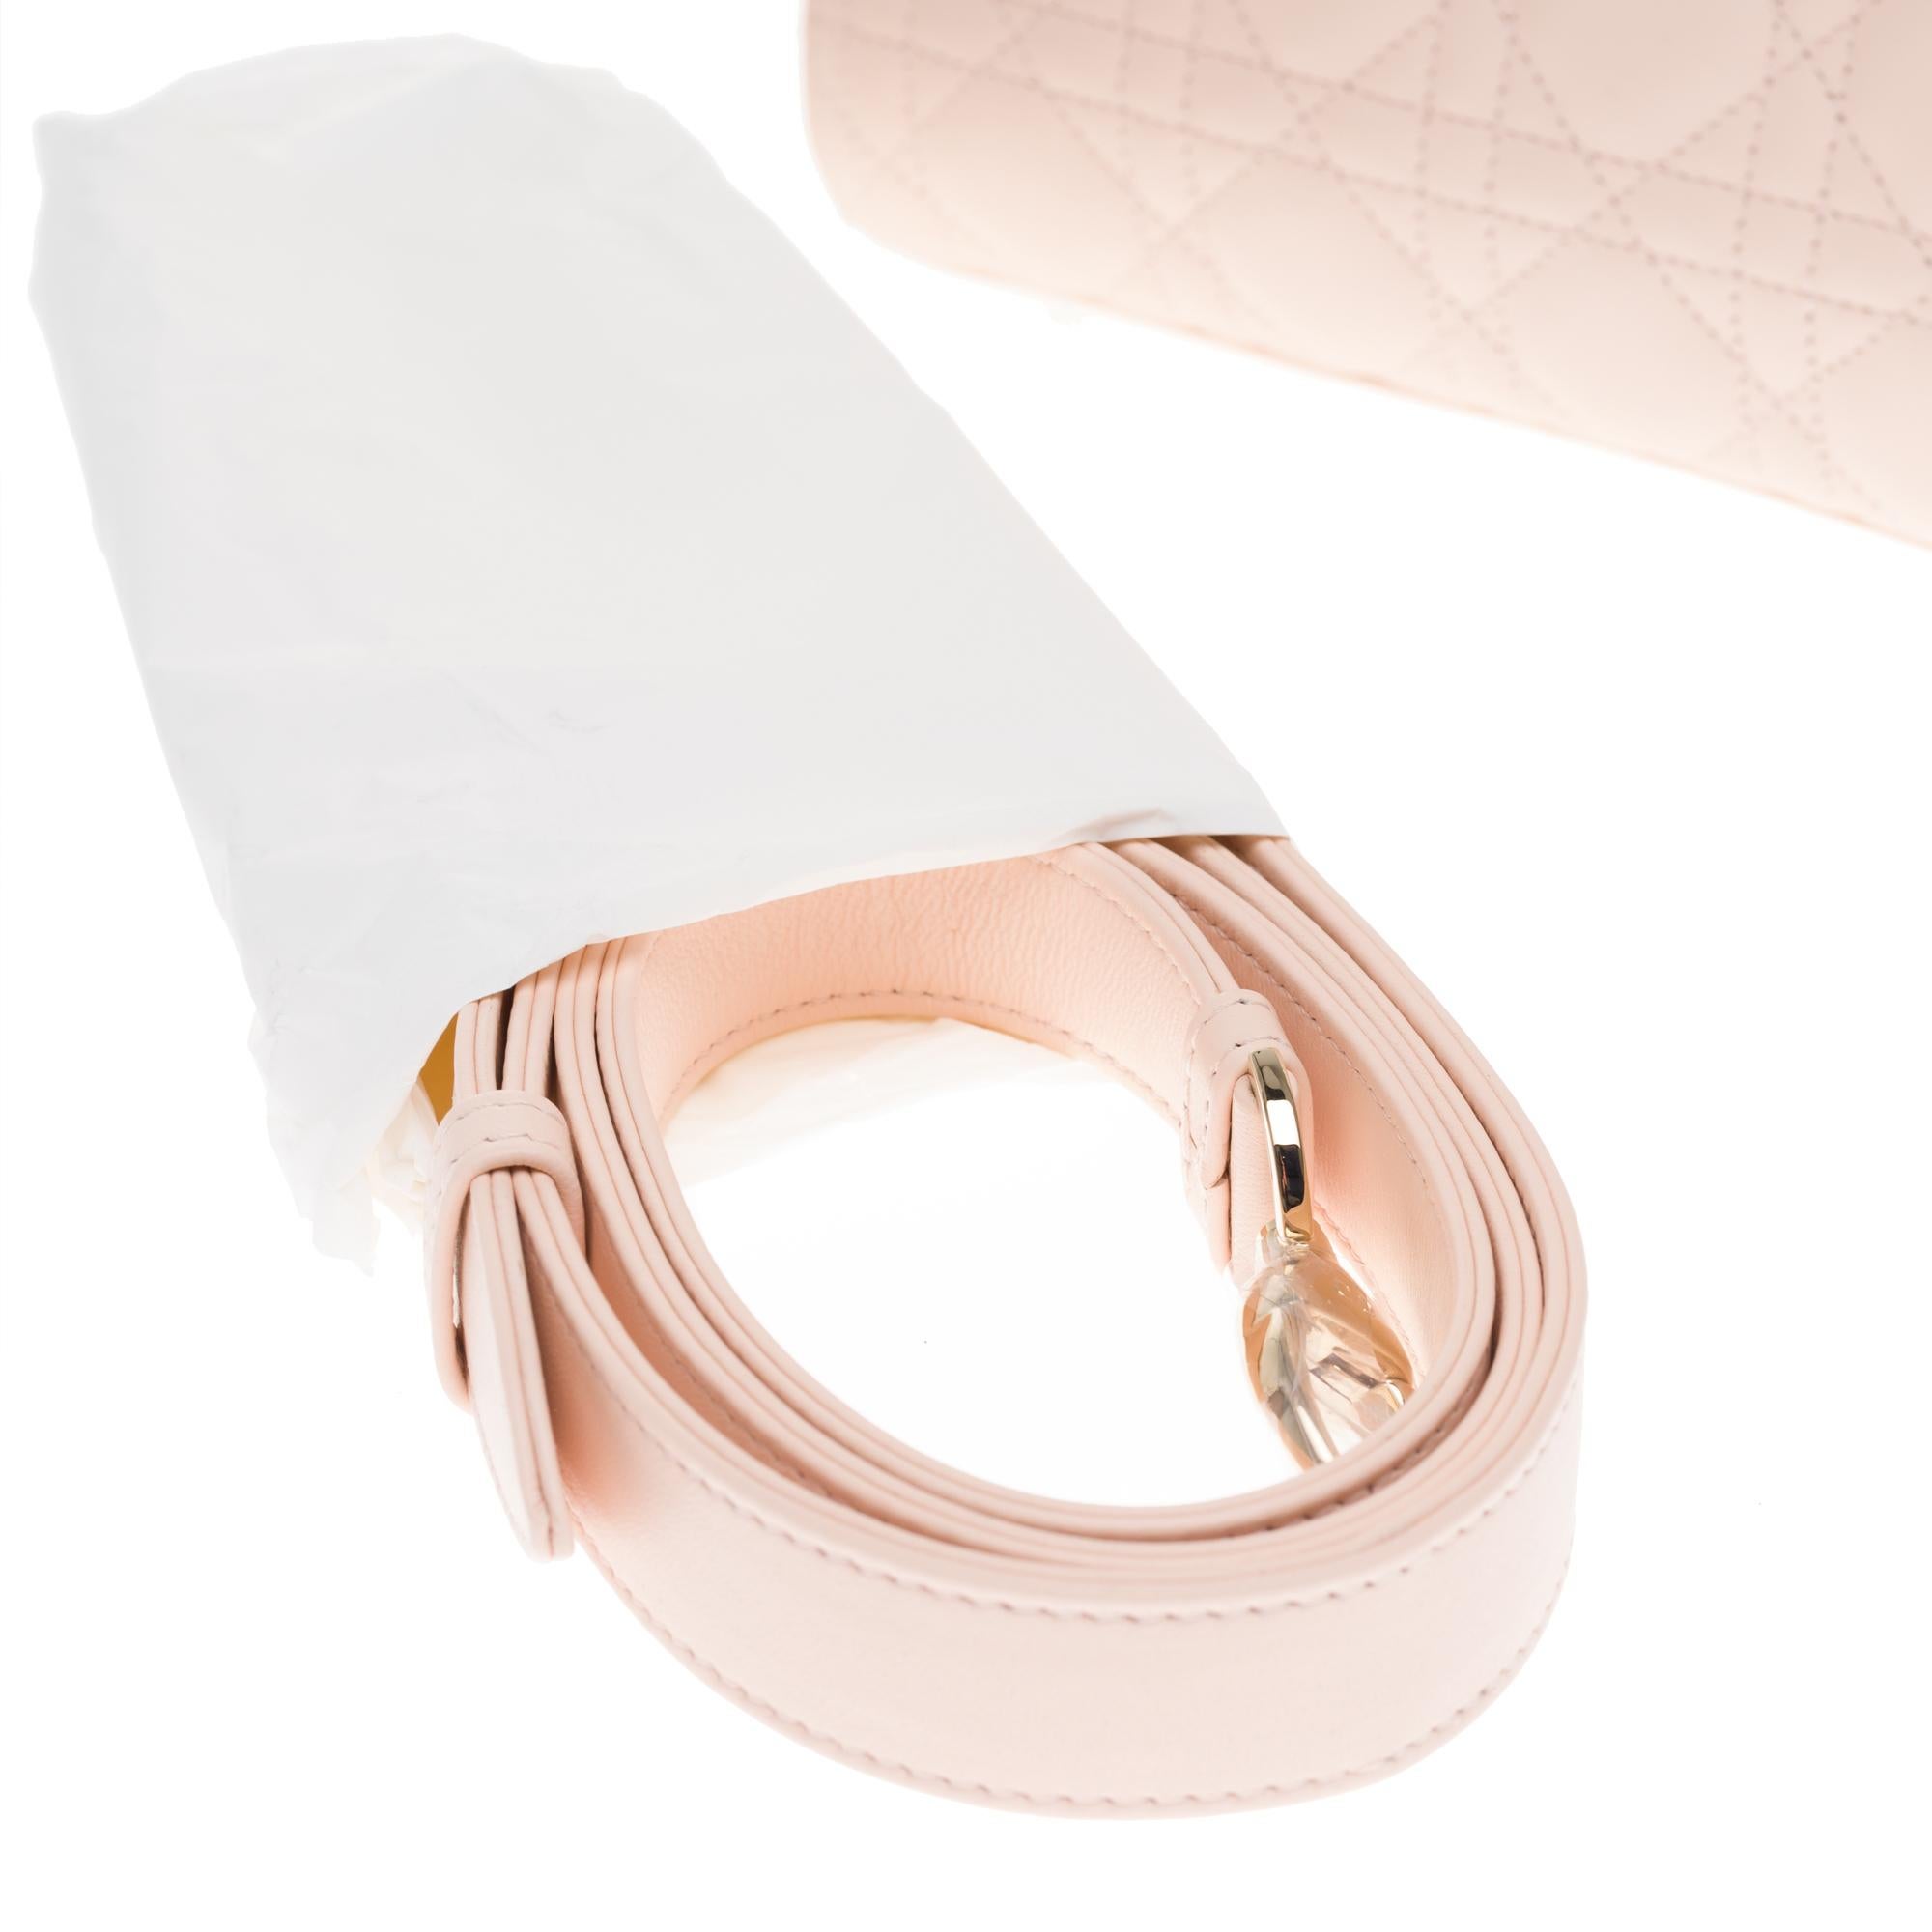  Christian Dior Lady Dior MM (Medium size) handbag in Pink cannage leather, GHW 1